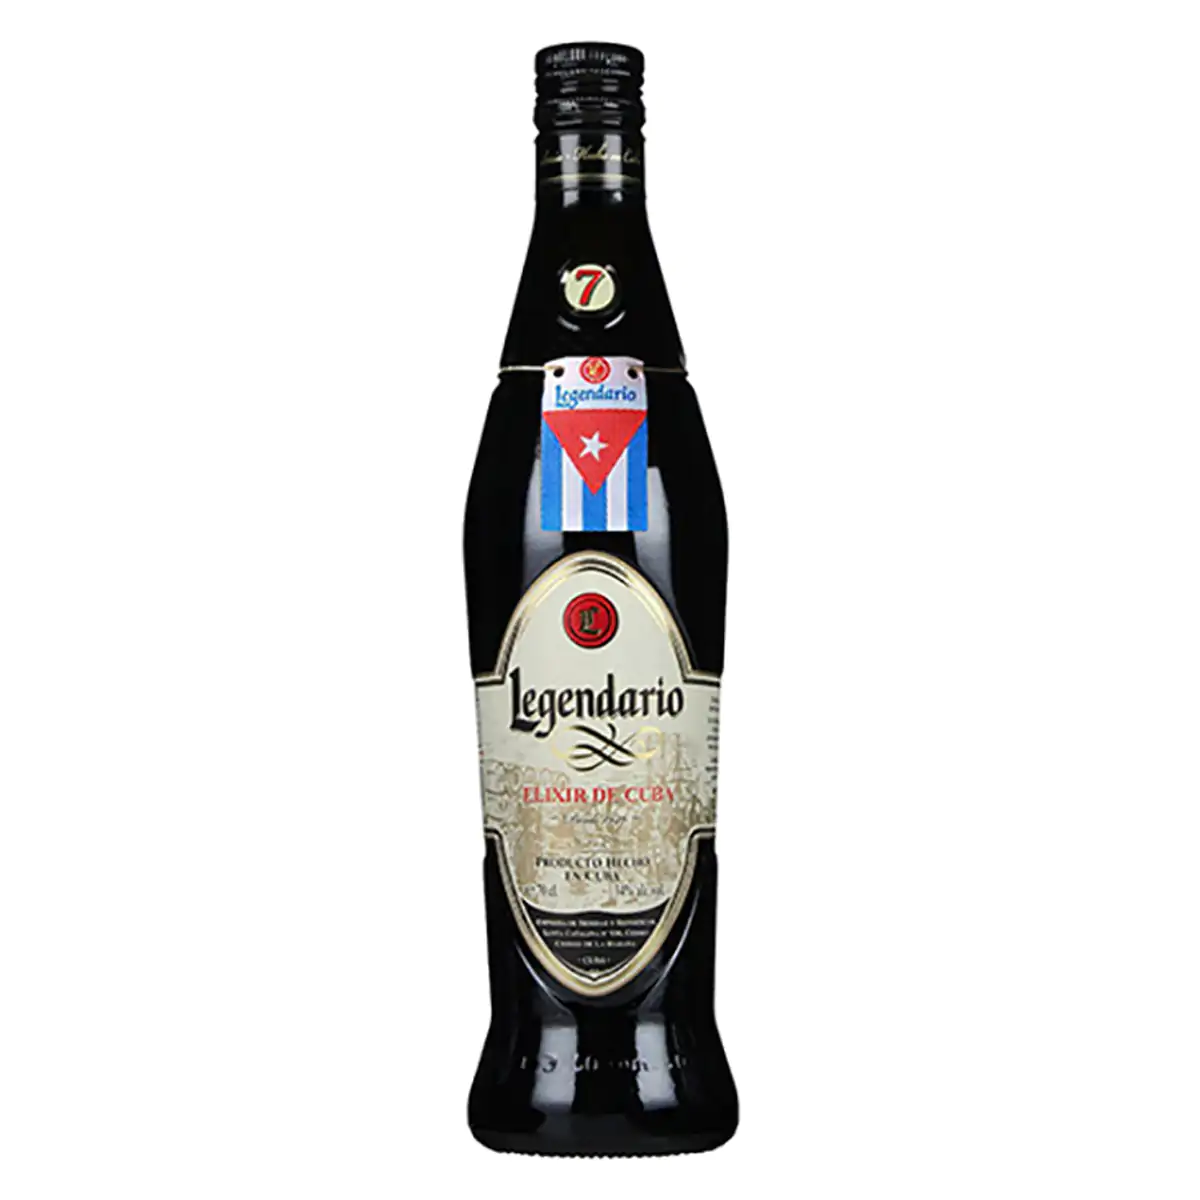 Legendario Rum 34% kaufen jetzt Vol. 700ml de Elixir Likör Cuba